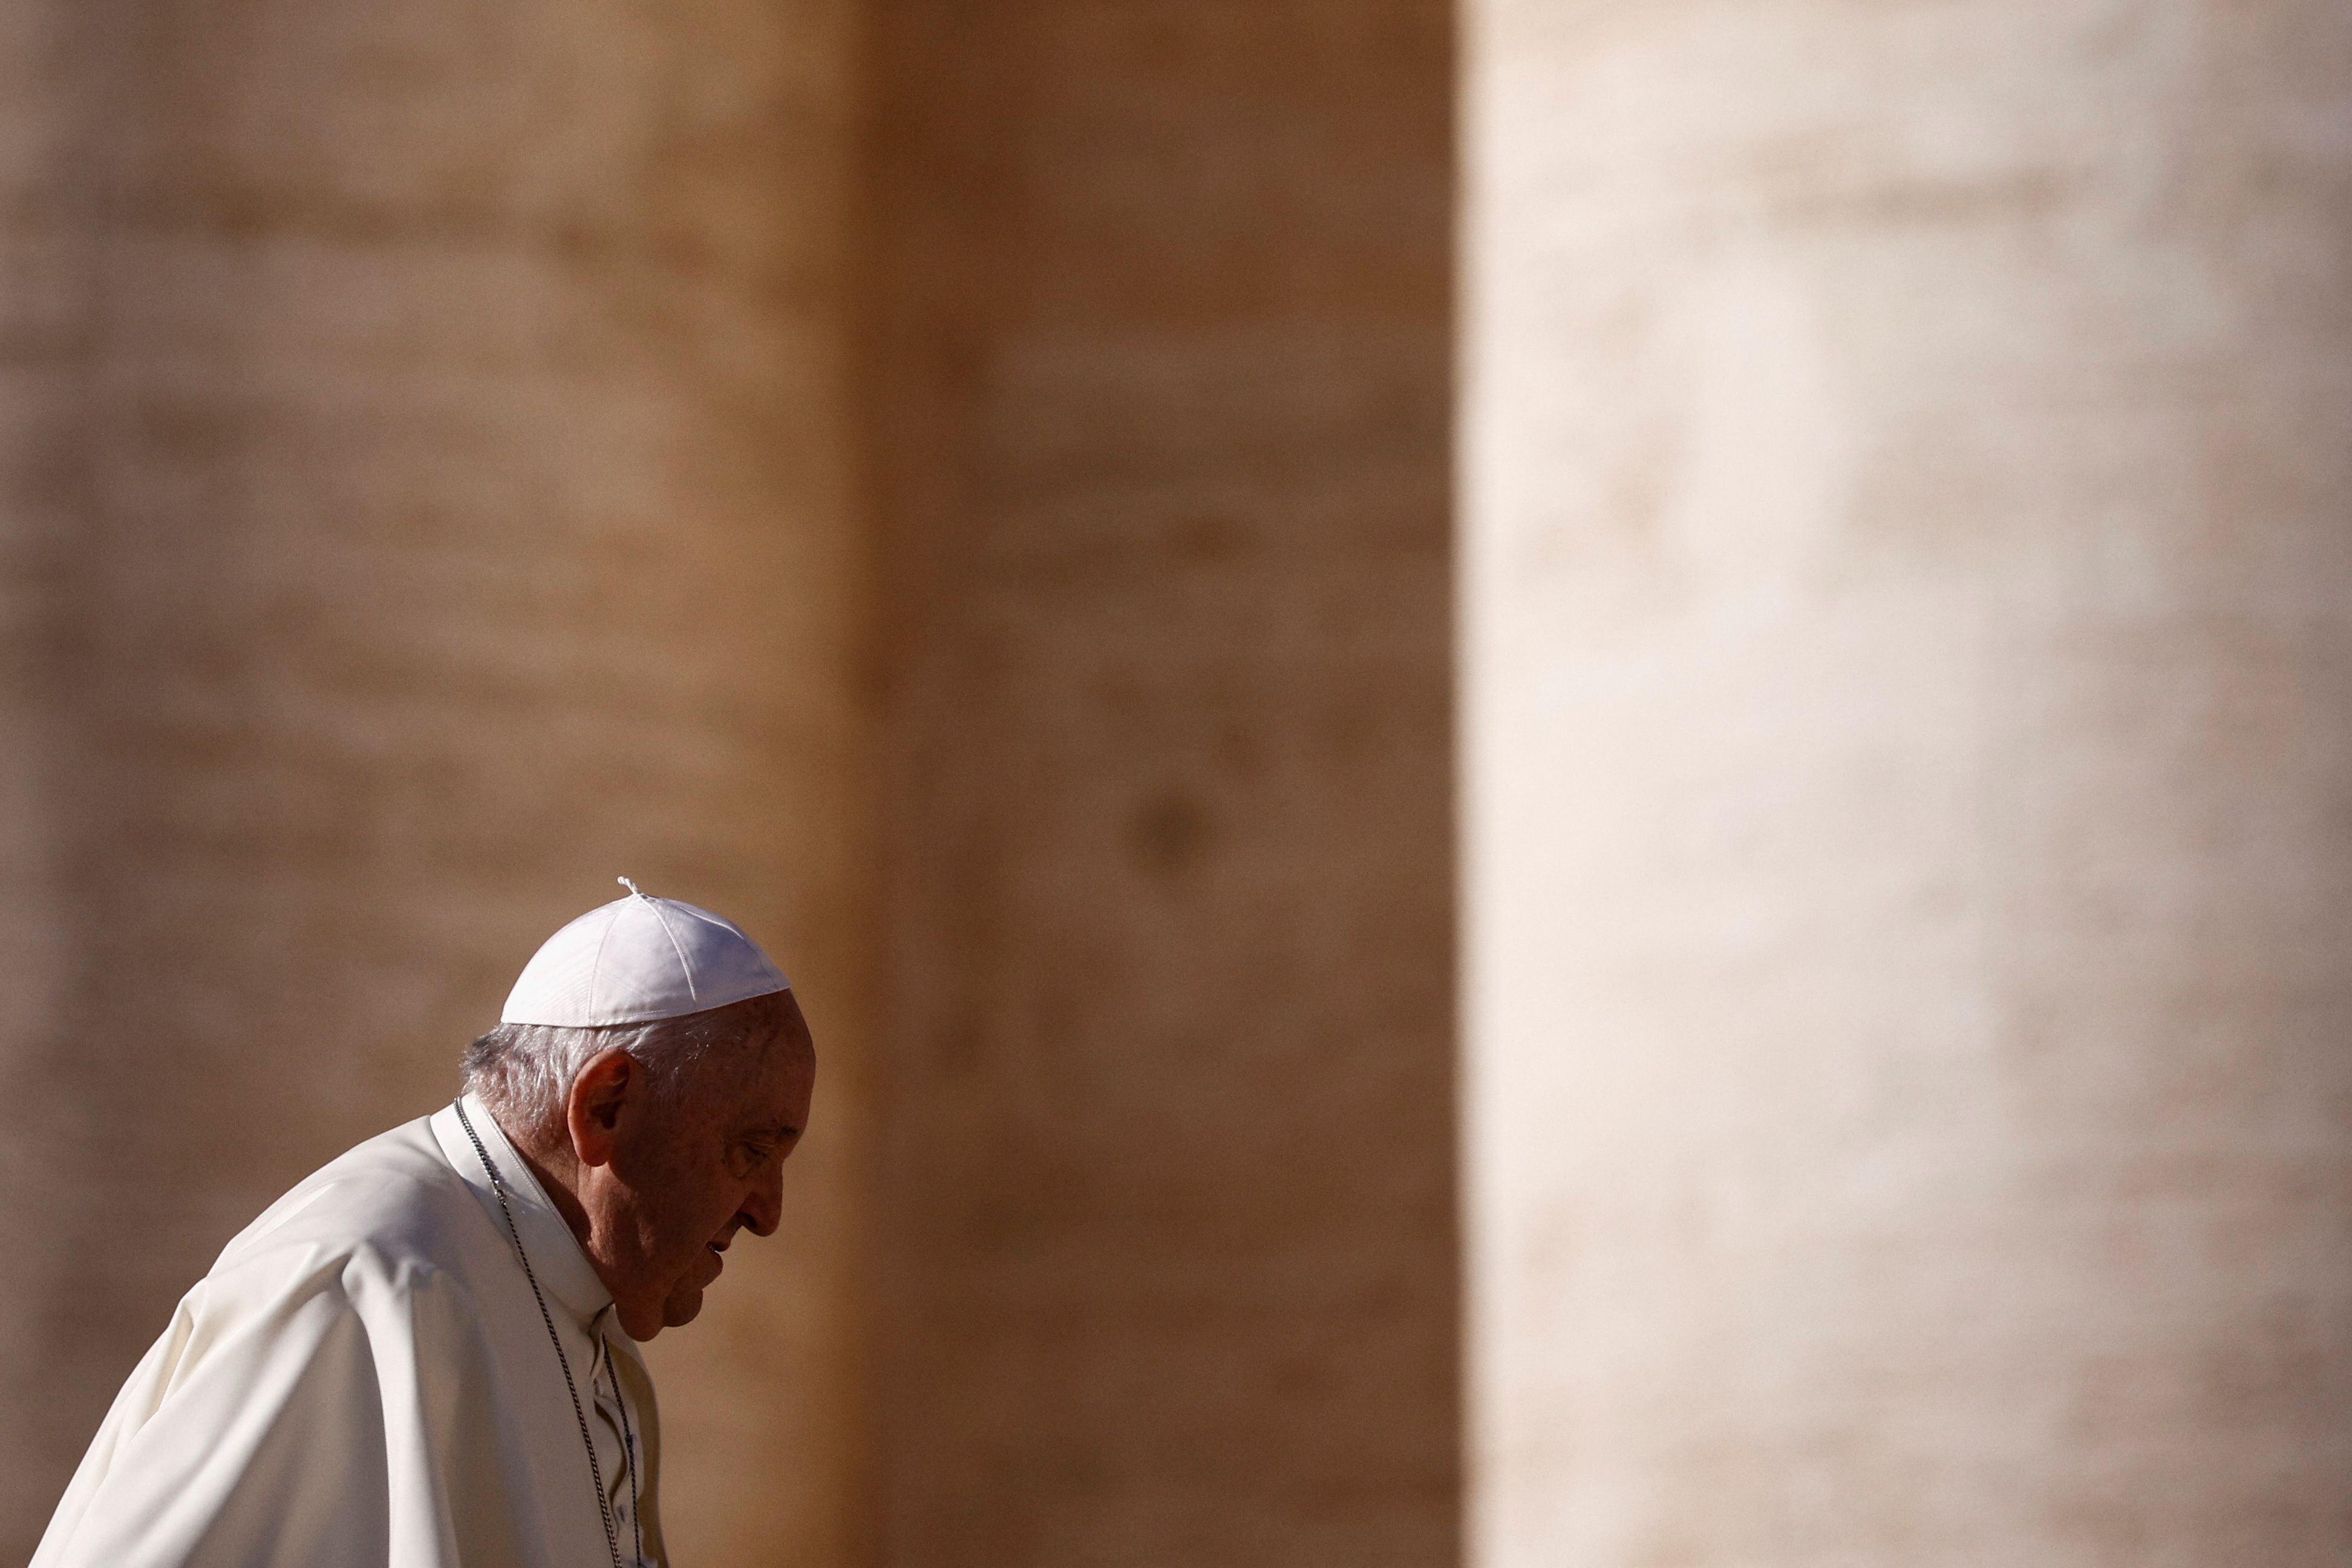 8일(현지 시각) 프란치스코 교황이 바티칸 성 베드로 광장에서 열린 주간 연설에 참석하고 있다. 
/로이터 연합뉴스